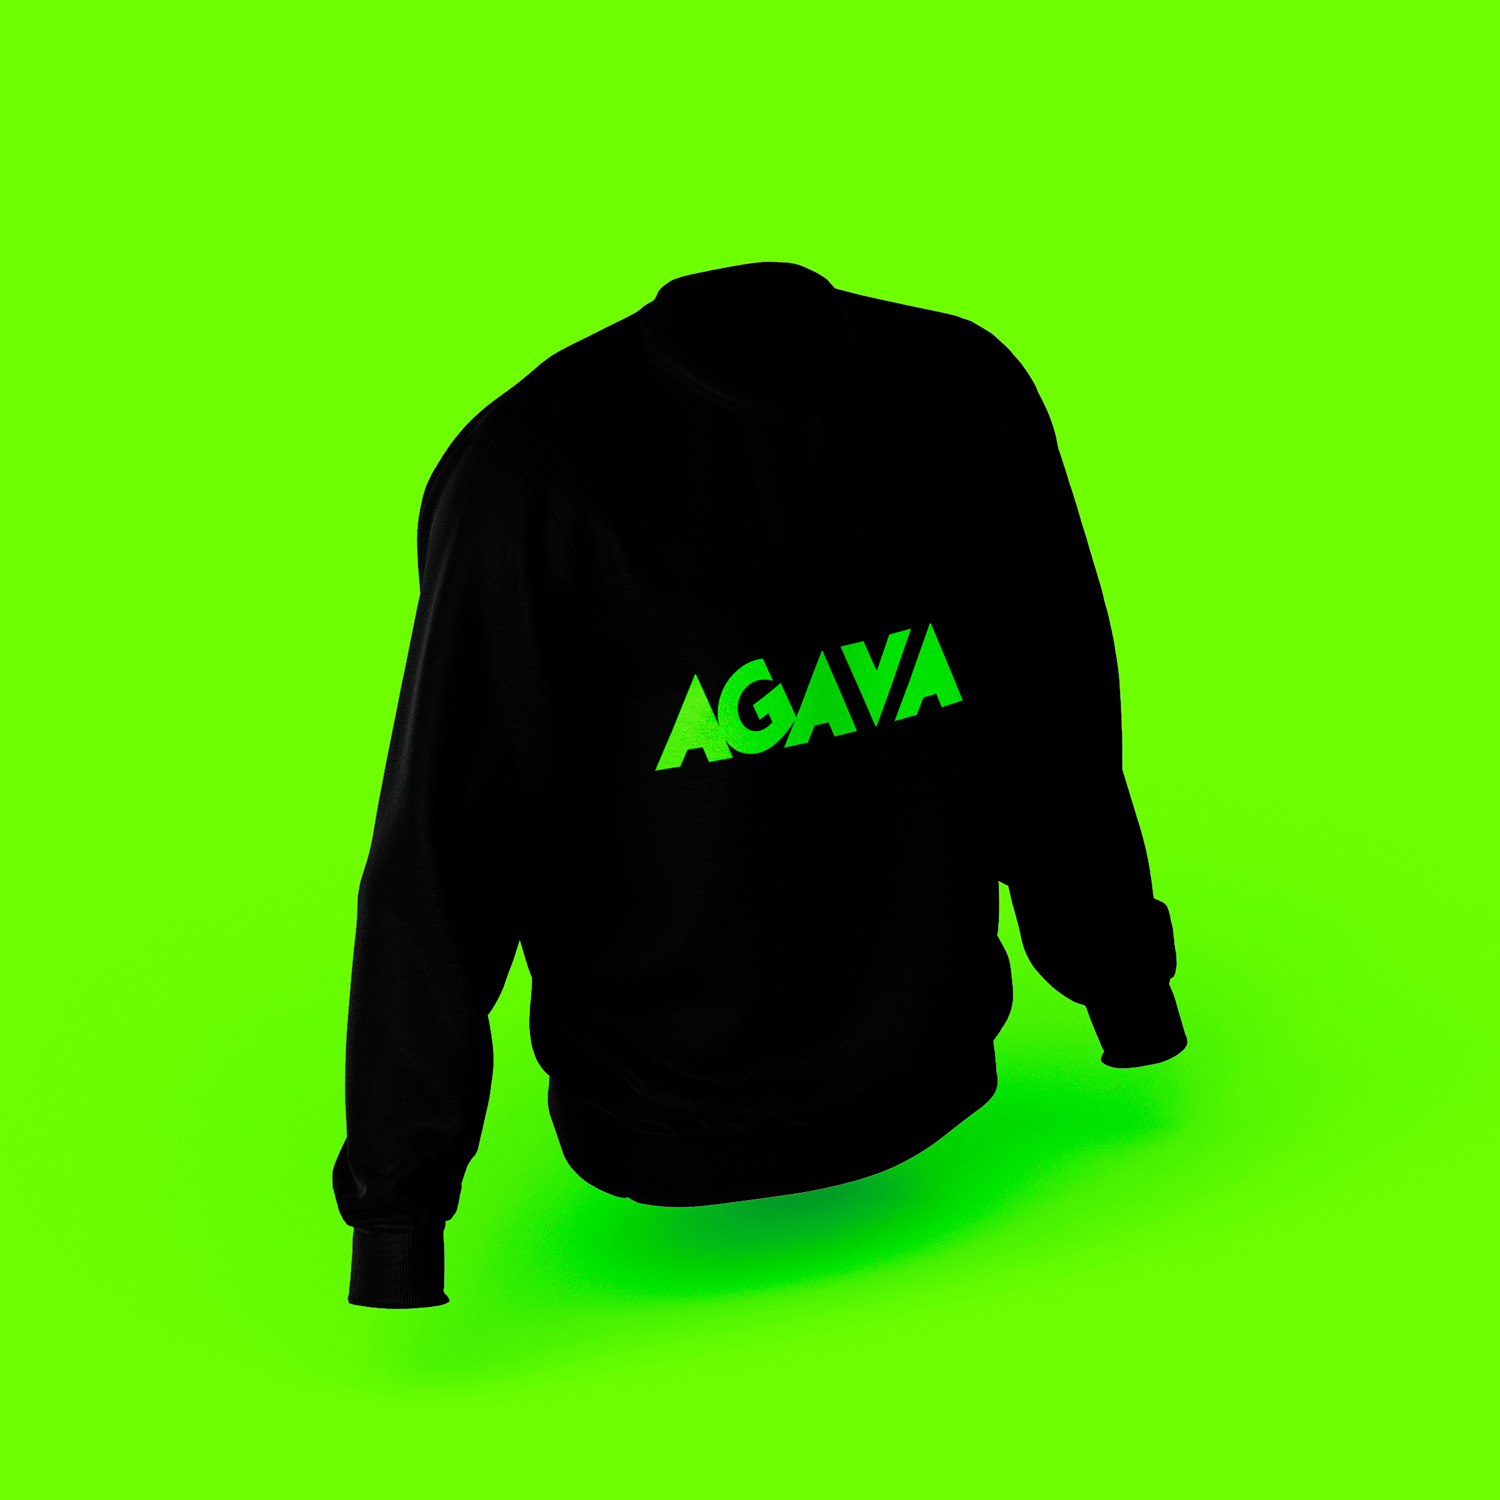 Логотип AGAVA